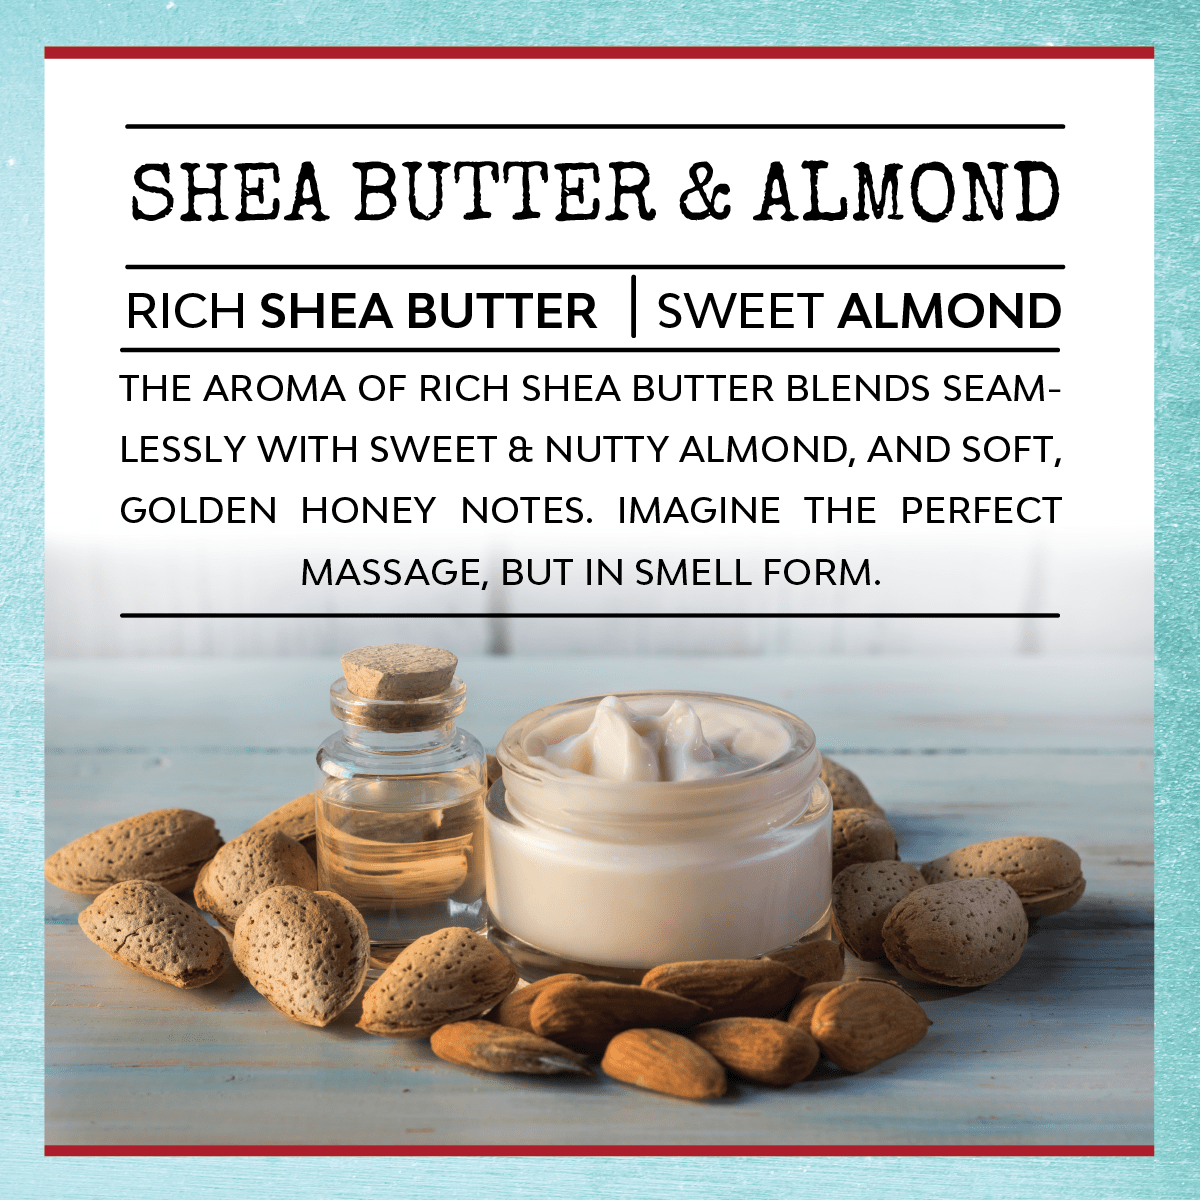 Shea Butter & Almond